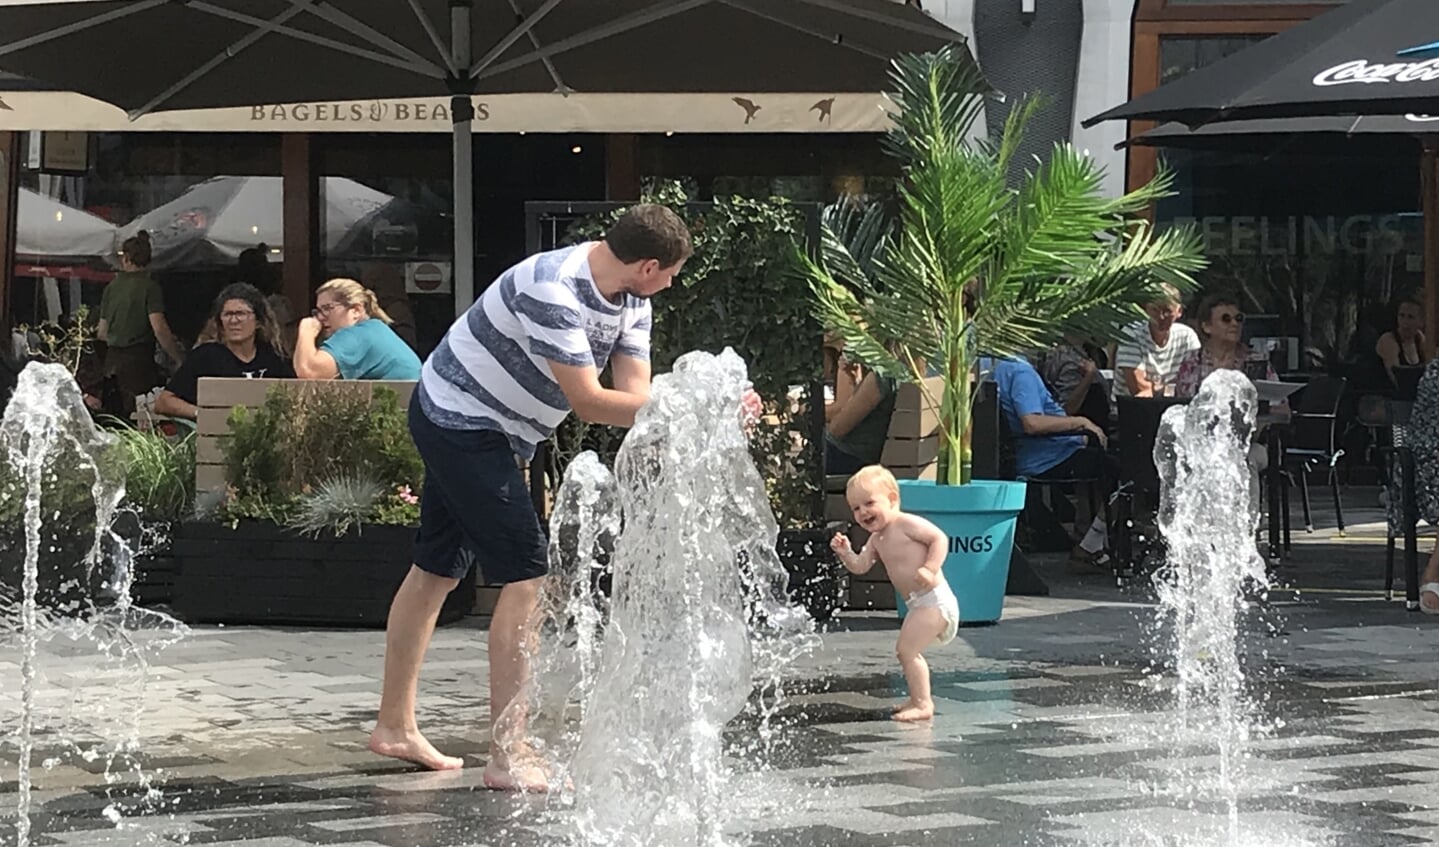 ,,Mijn man en zoontje hebben lol bij het water in het winkelcentrum in Nieuwegein.